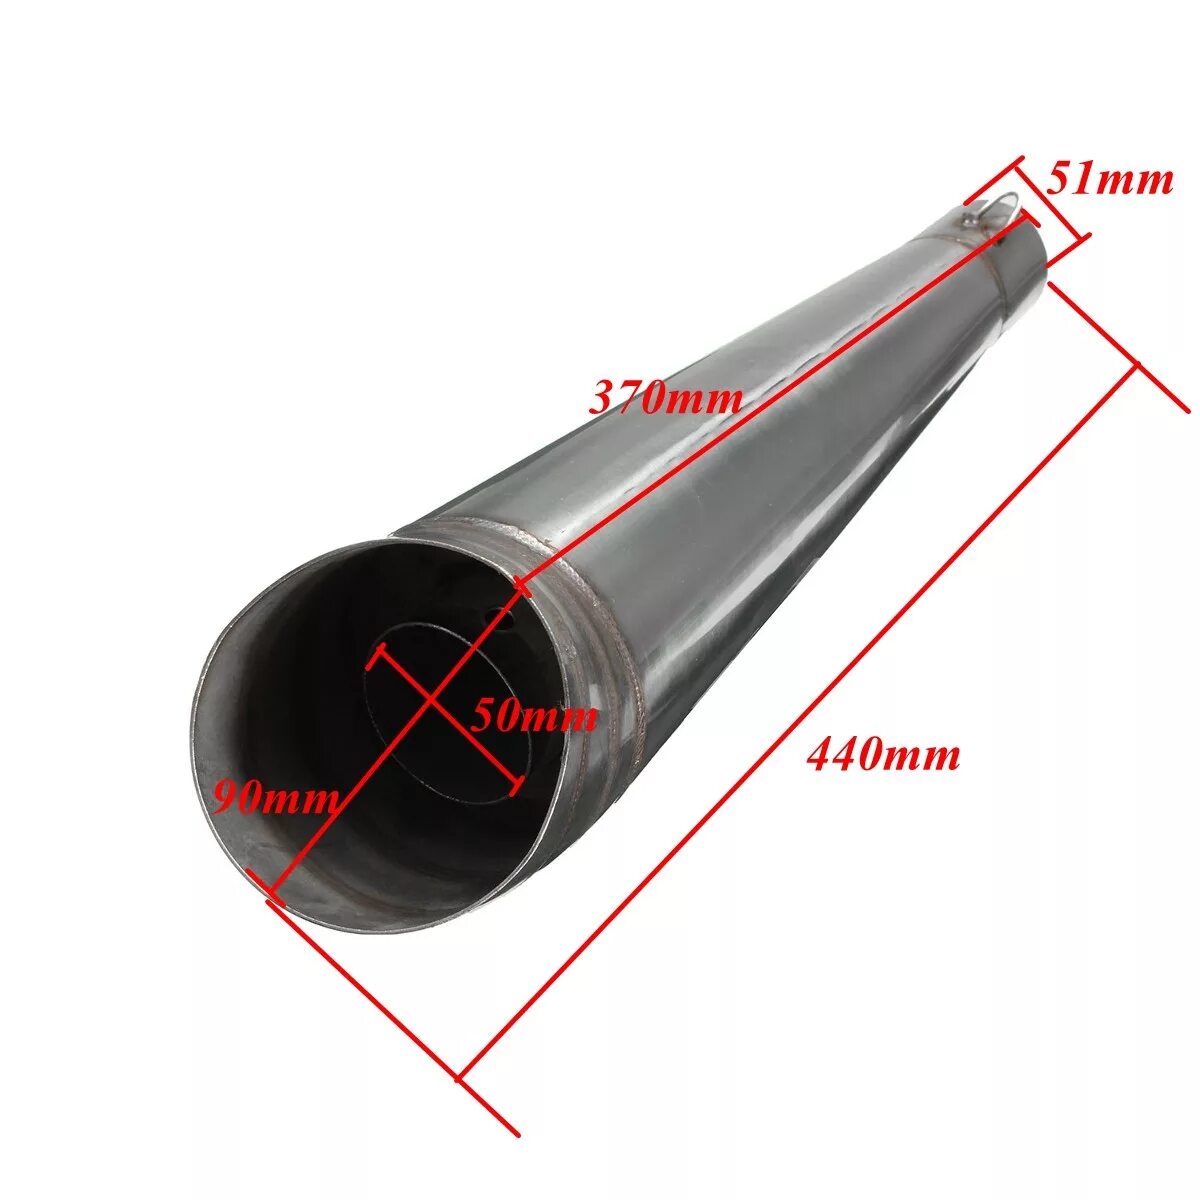 Глушитель диаметр 51мм. Труба для выхлопа 51 мм. Наружный диаметр выхлопной трубы 51 мм. Труба 51 мм для глушителя.